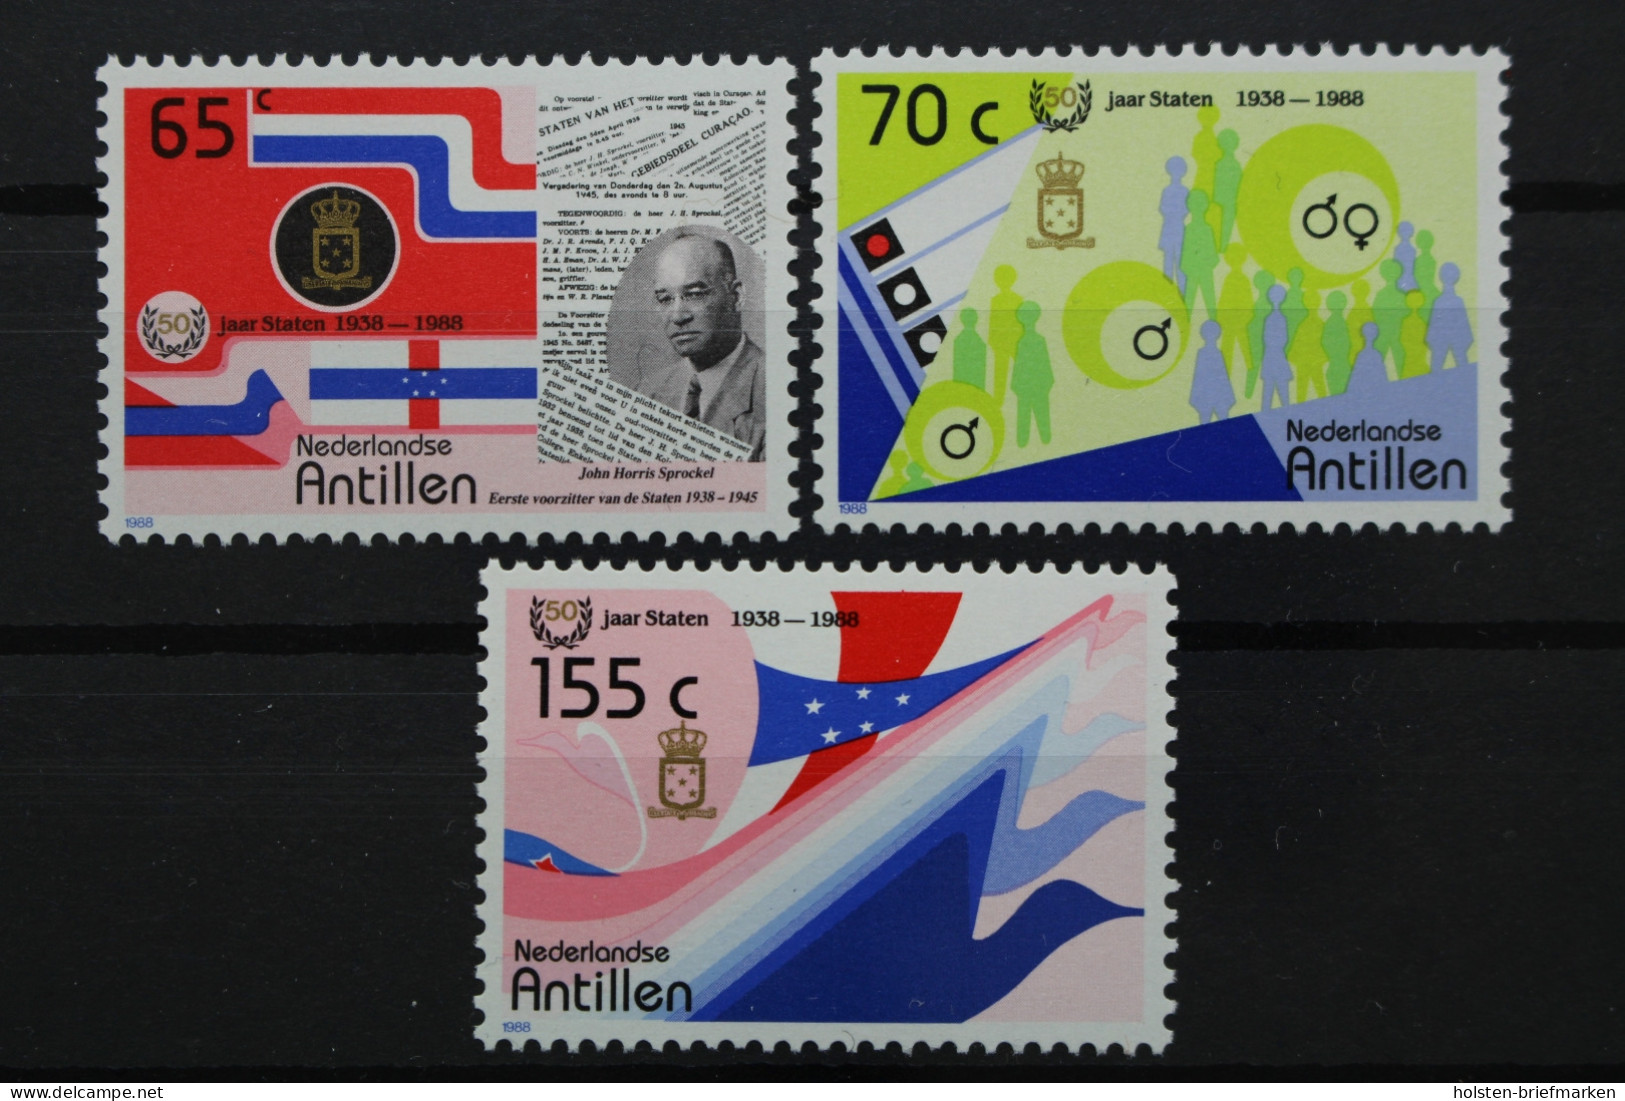 Niederländische Antillen, MiNr. 632-634, Postfrisch - Sonstige - Amerika